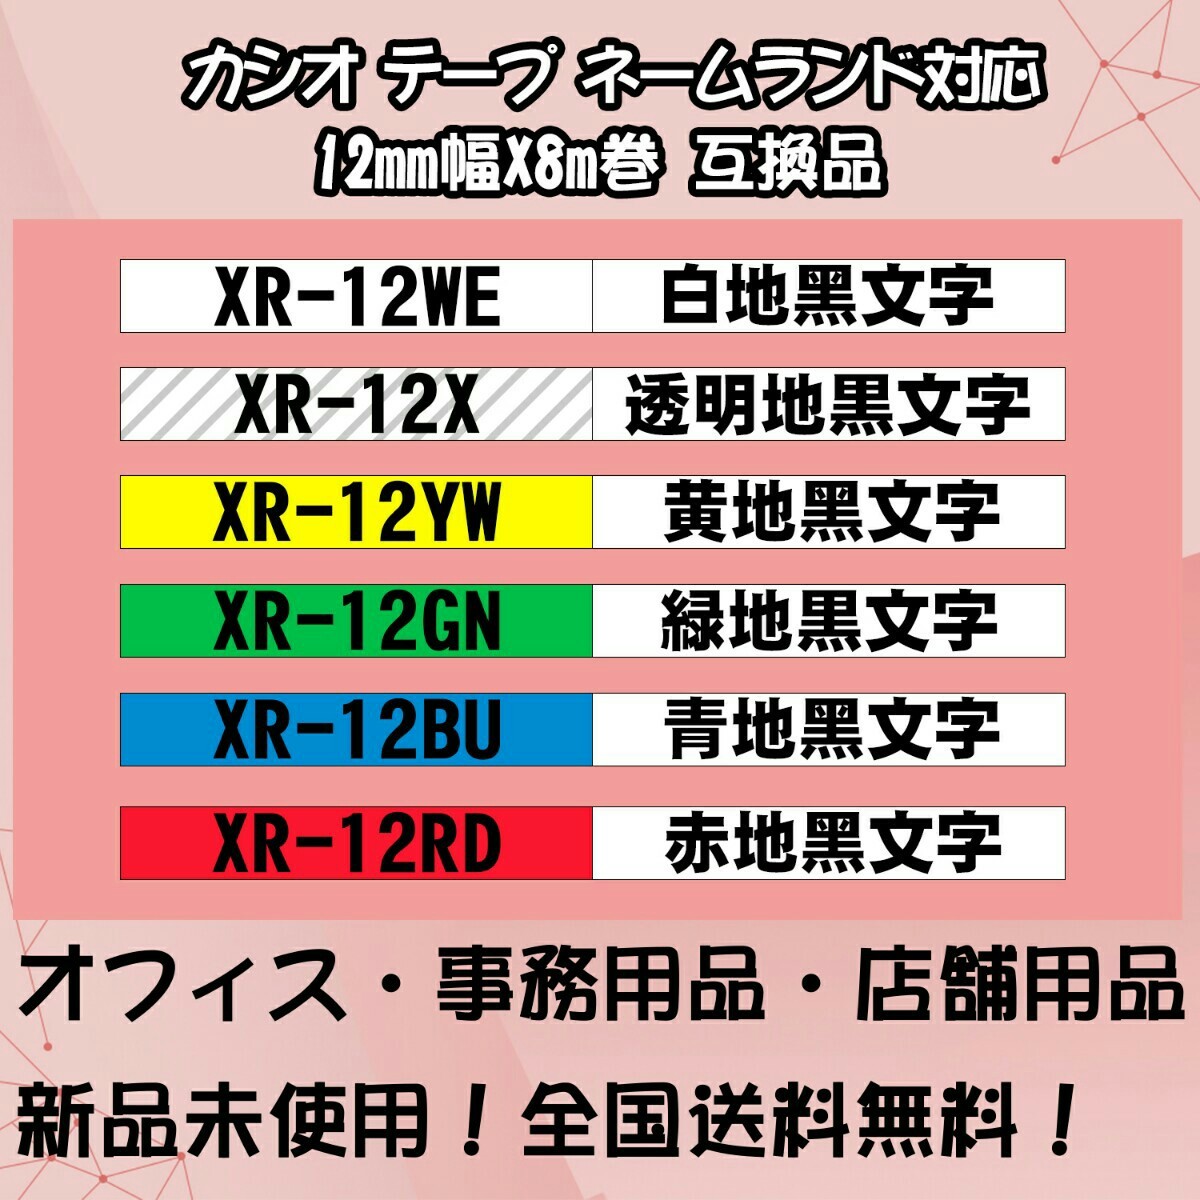 カシオ 12mm幅X8m巻 ・15色選択可 ネームランド 互換テープ 5個